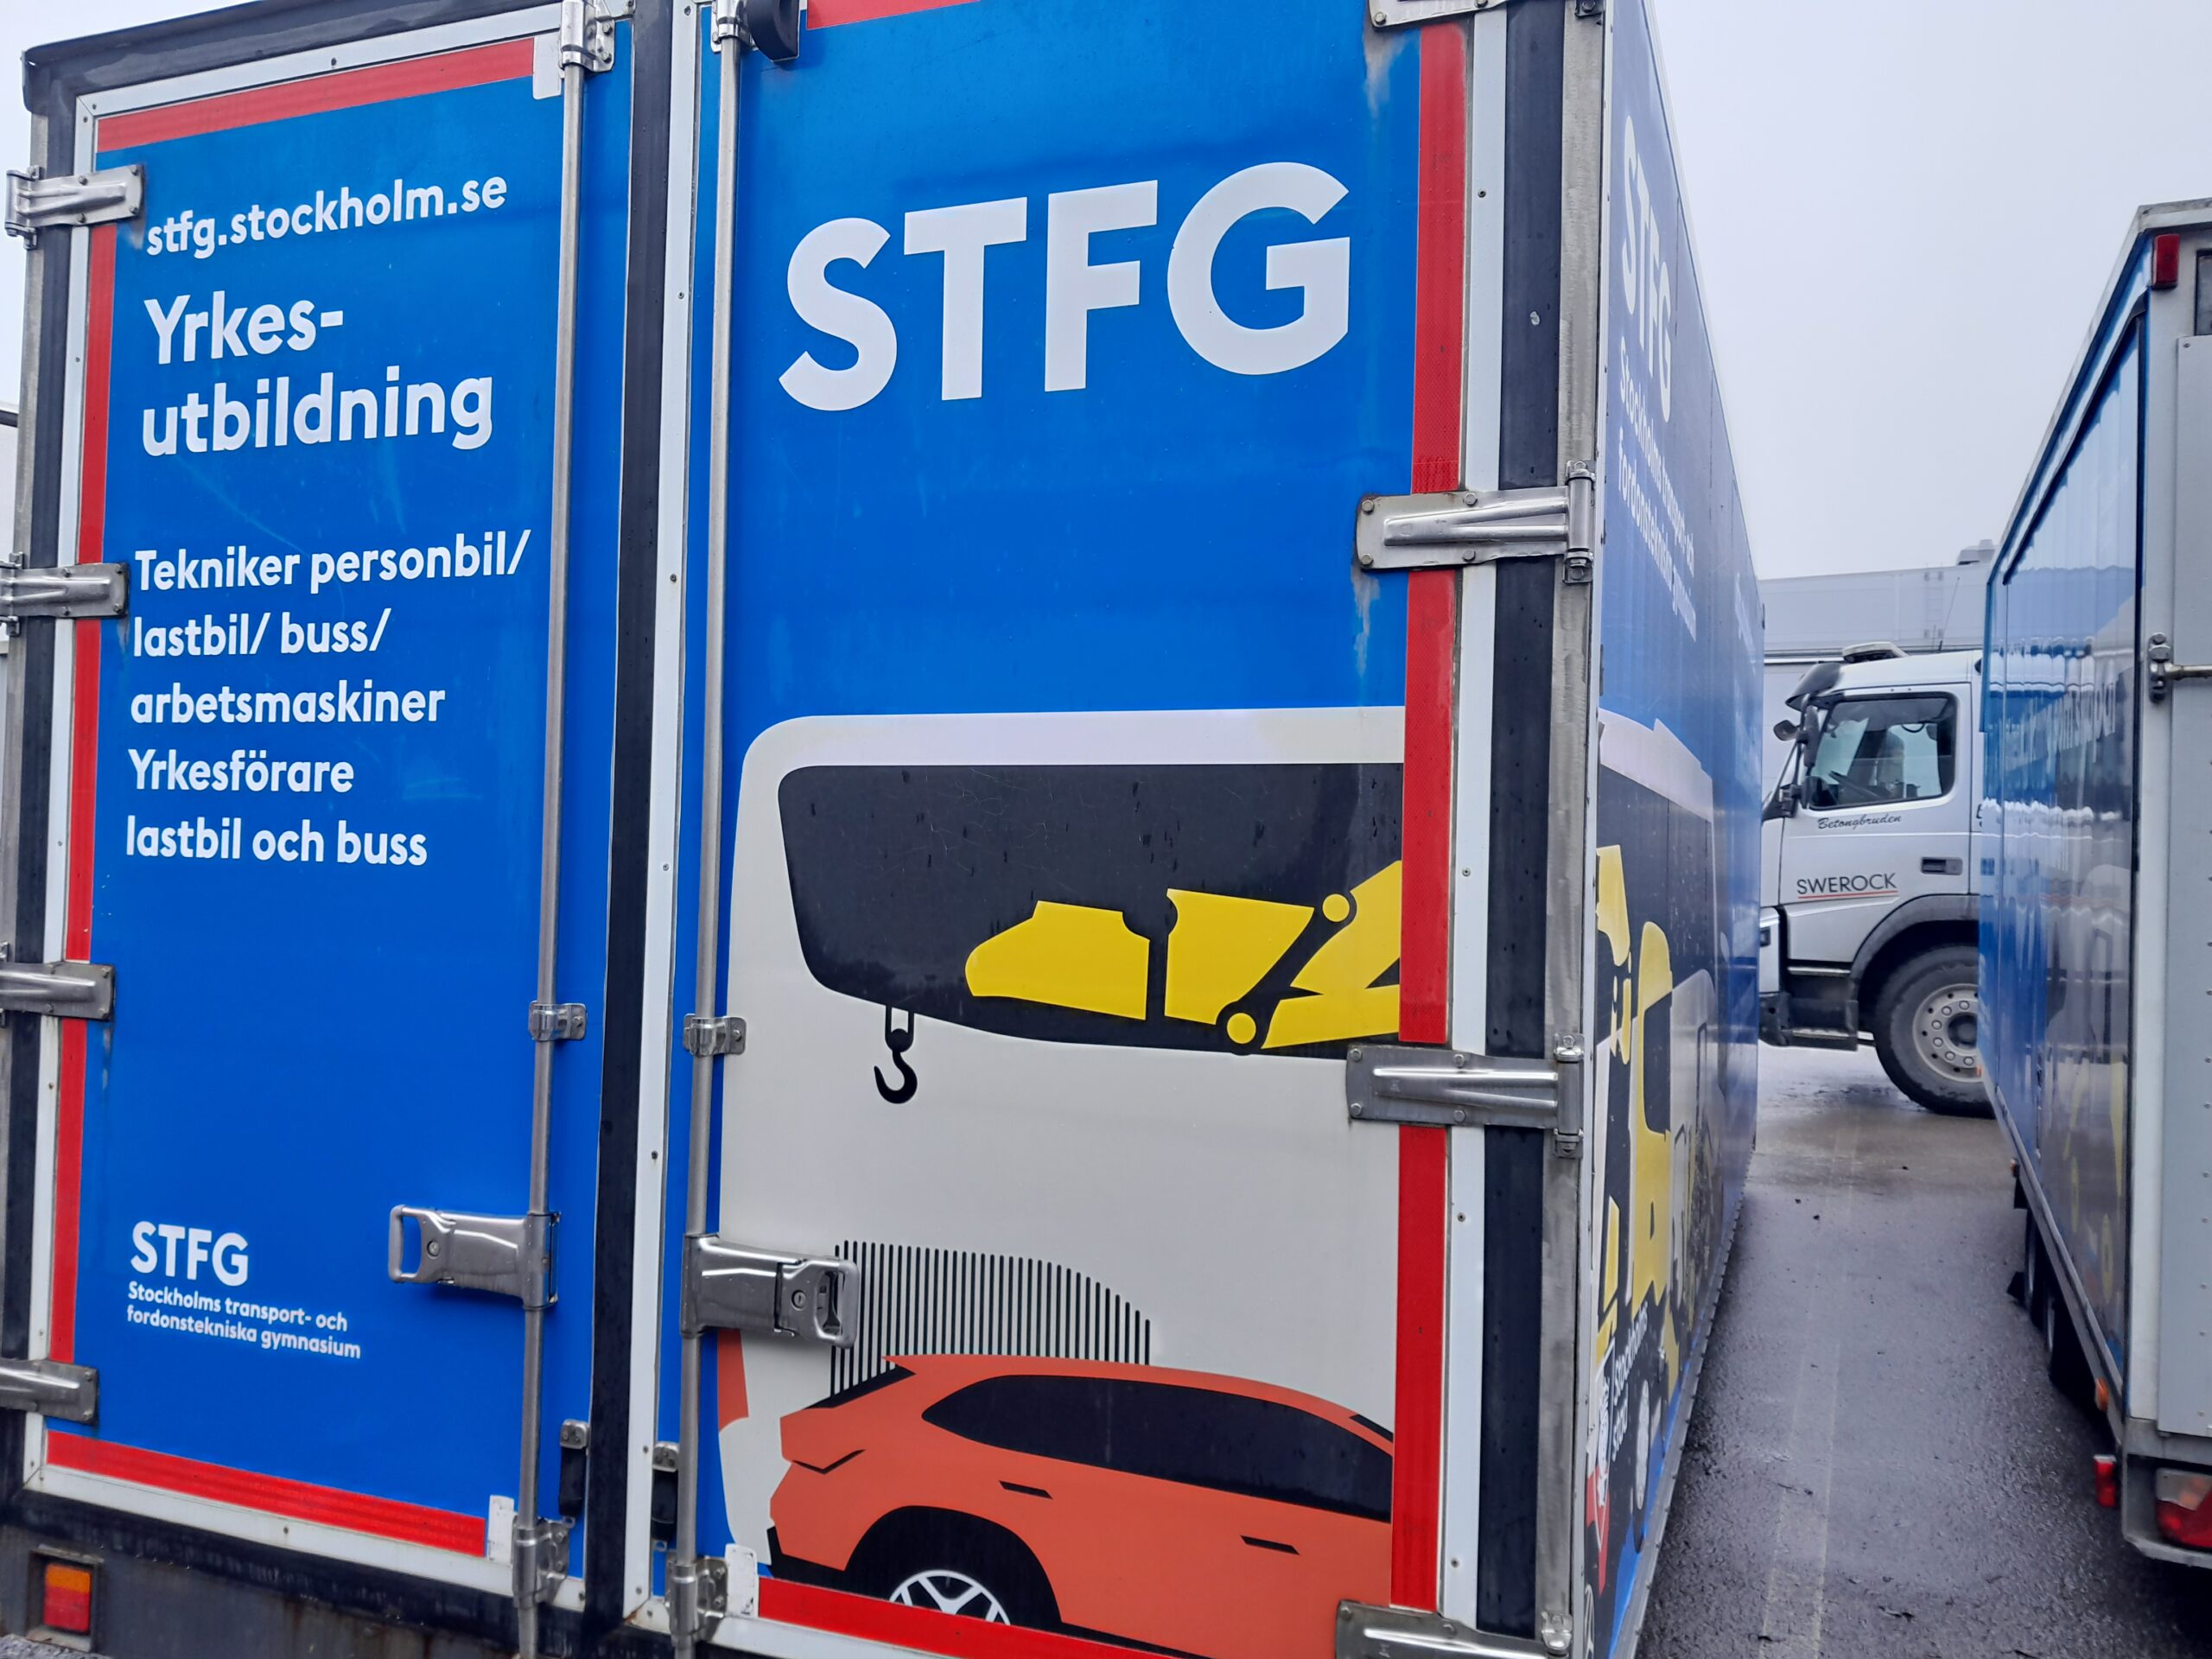 På besök hos STFG- Stockholms fordons- och transporttekniska gymnasium